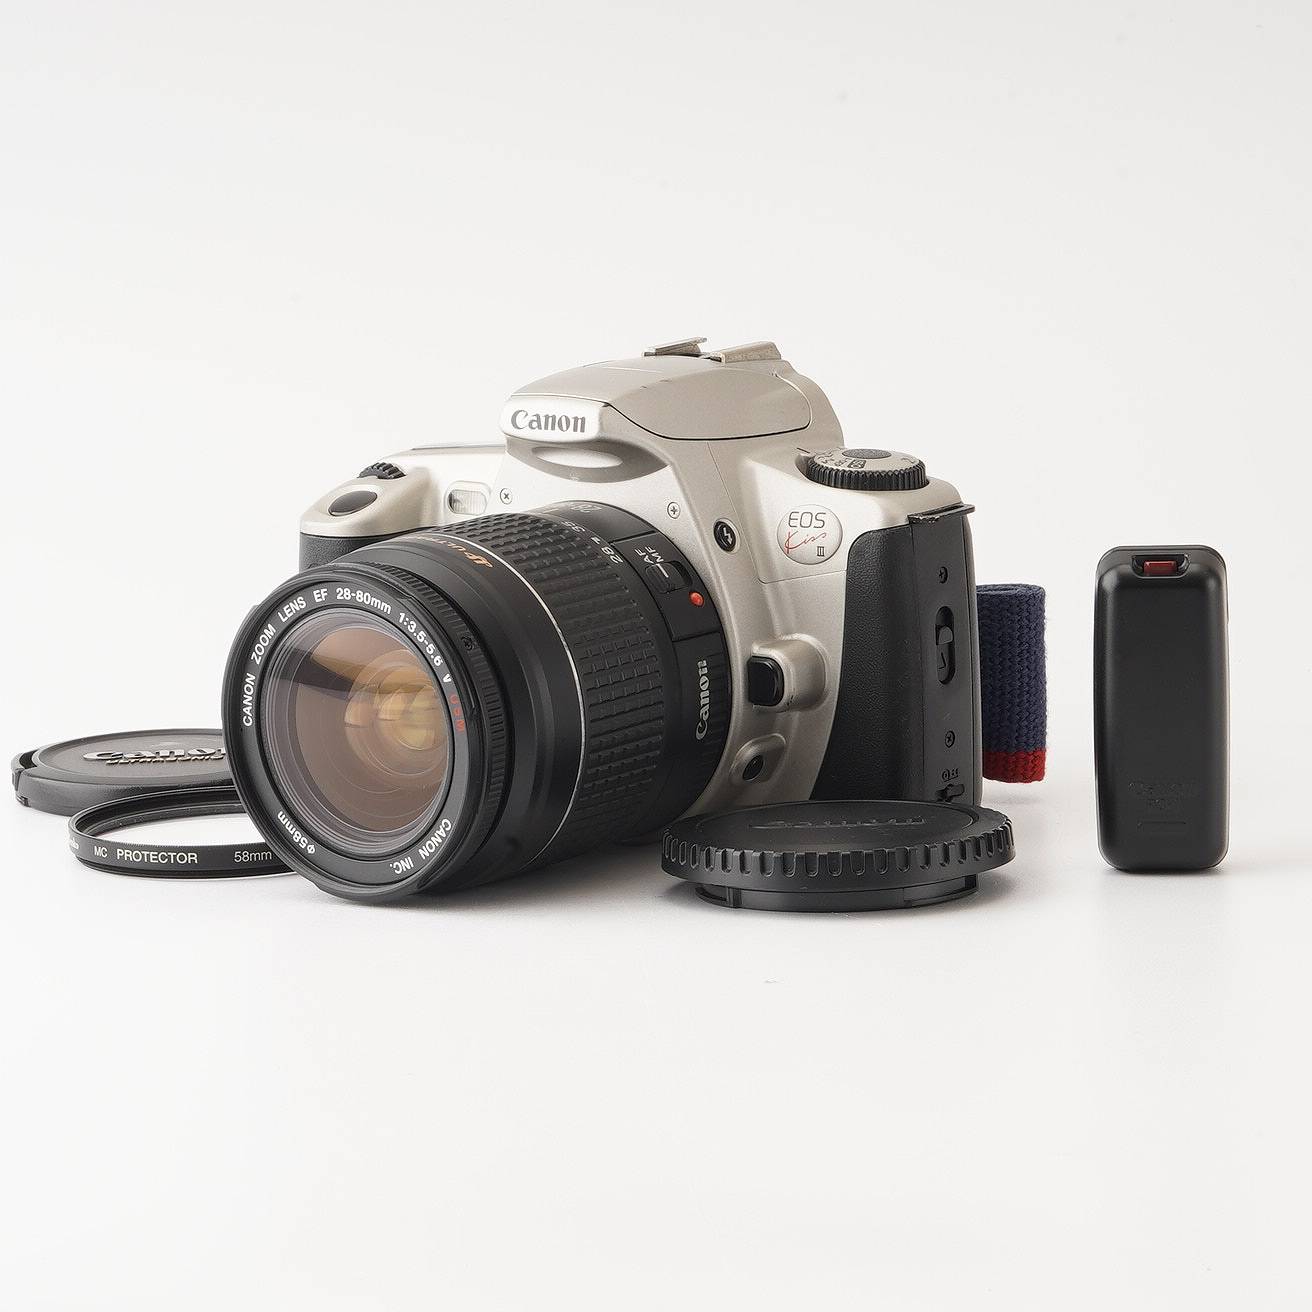 Υ Canon EOS Kiss III / CANON ZOOM LENS EF 28-80mm F3.5-5.6 V USM / RC-1